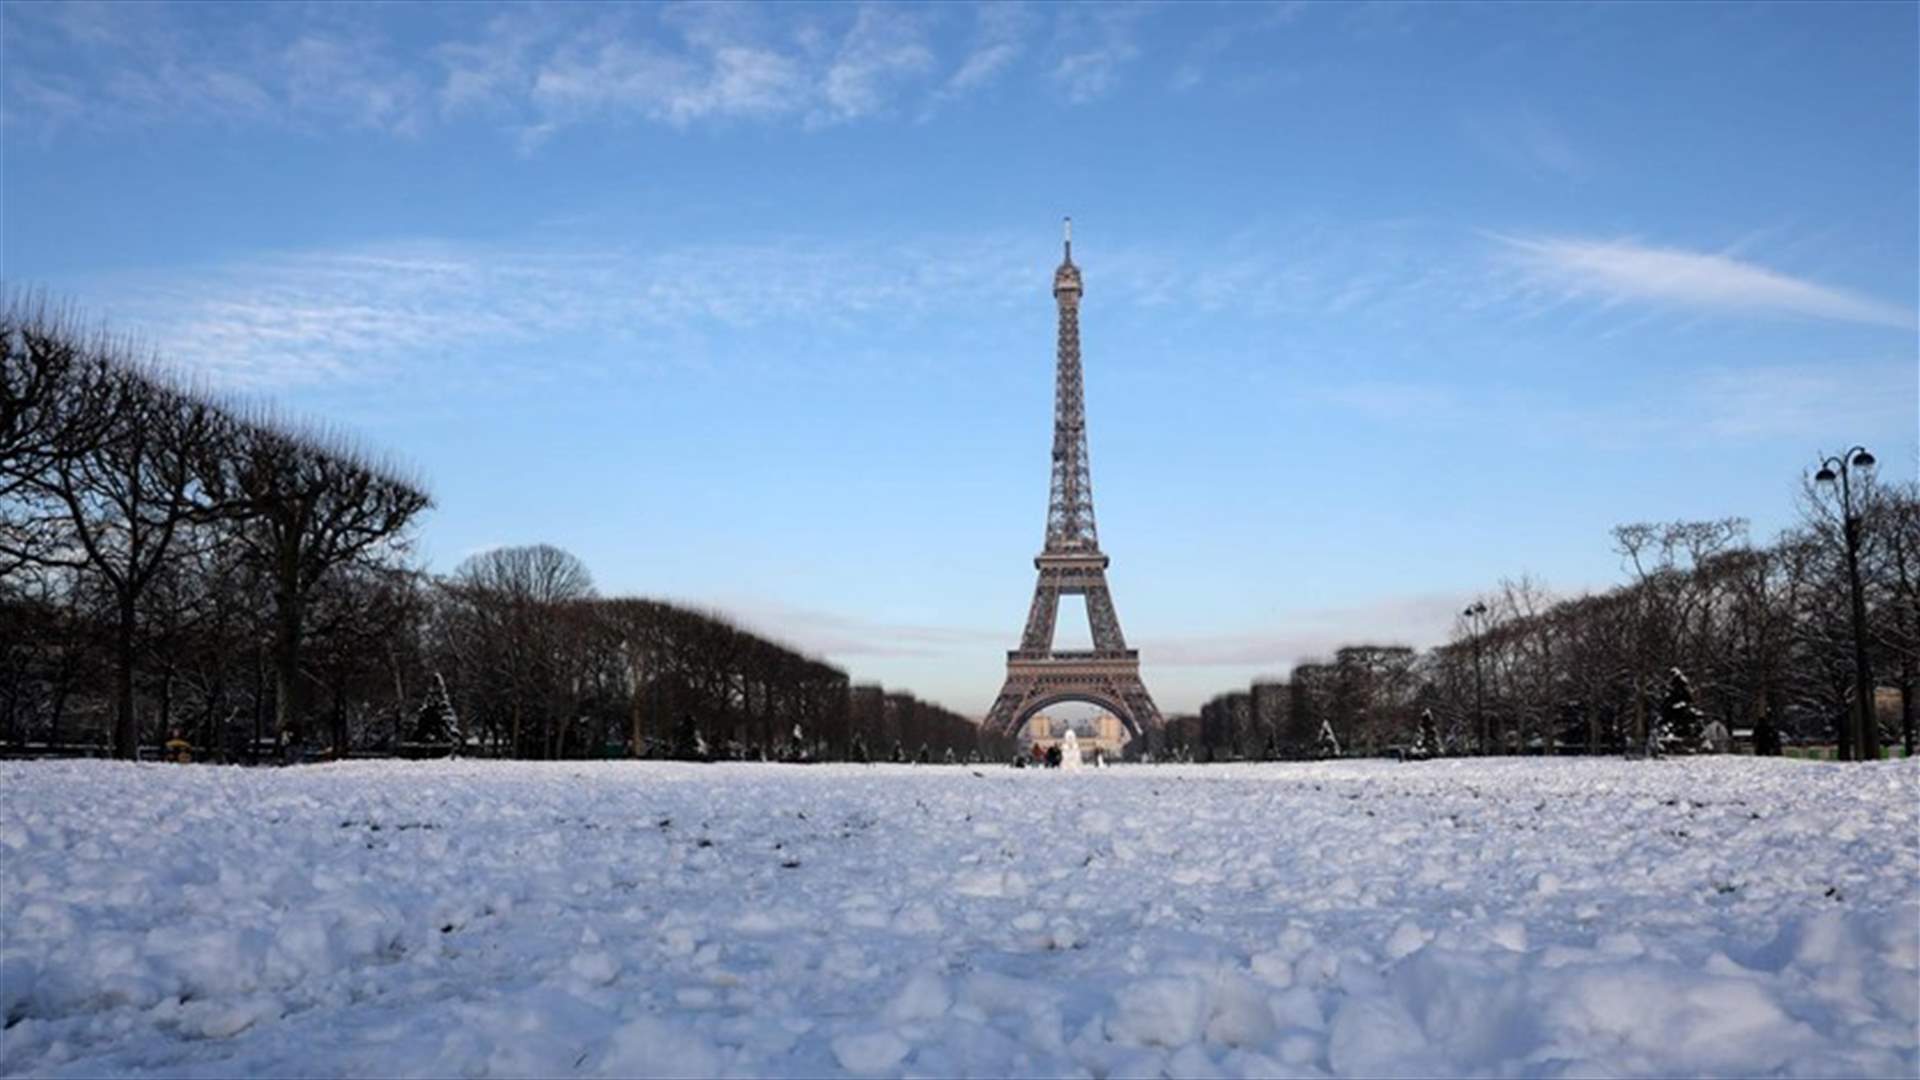 رئيسة الوزراء الفرنسية: مستعدون للشتاء من جهة الطاقة